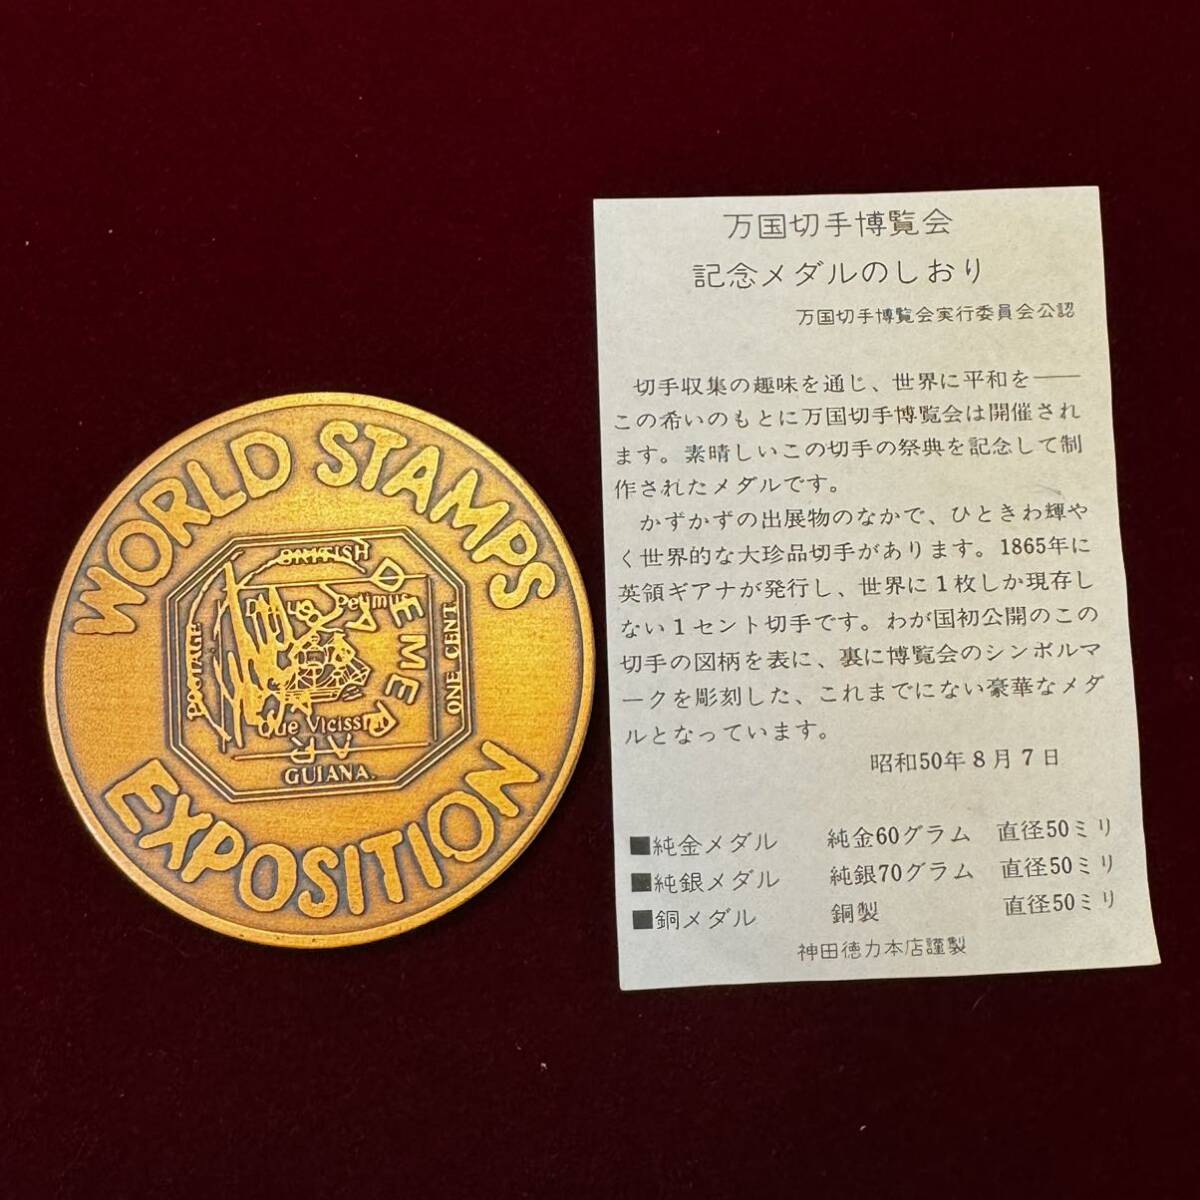 硬貨 日本 メタル 万国切手博覧会 1975年 英領ギアナ 切手 1セント 記念メタル コイン しおりの画像3